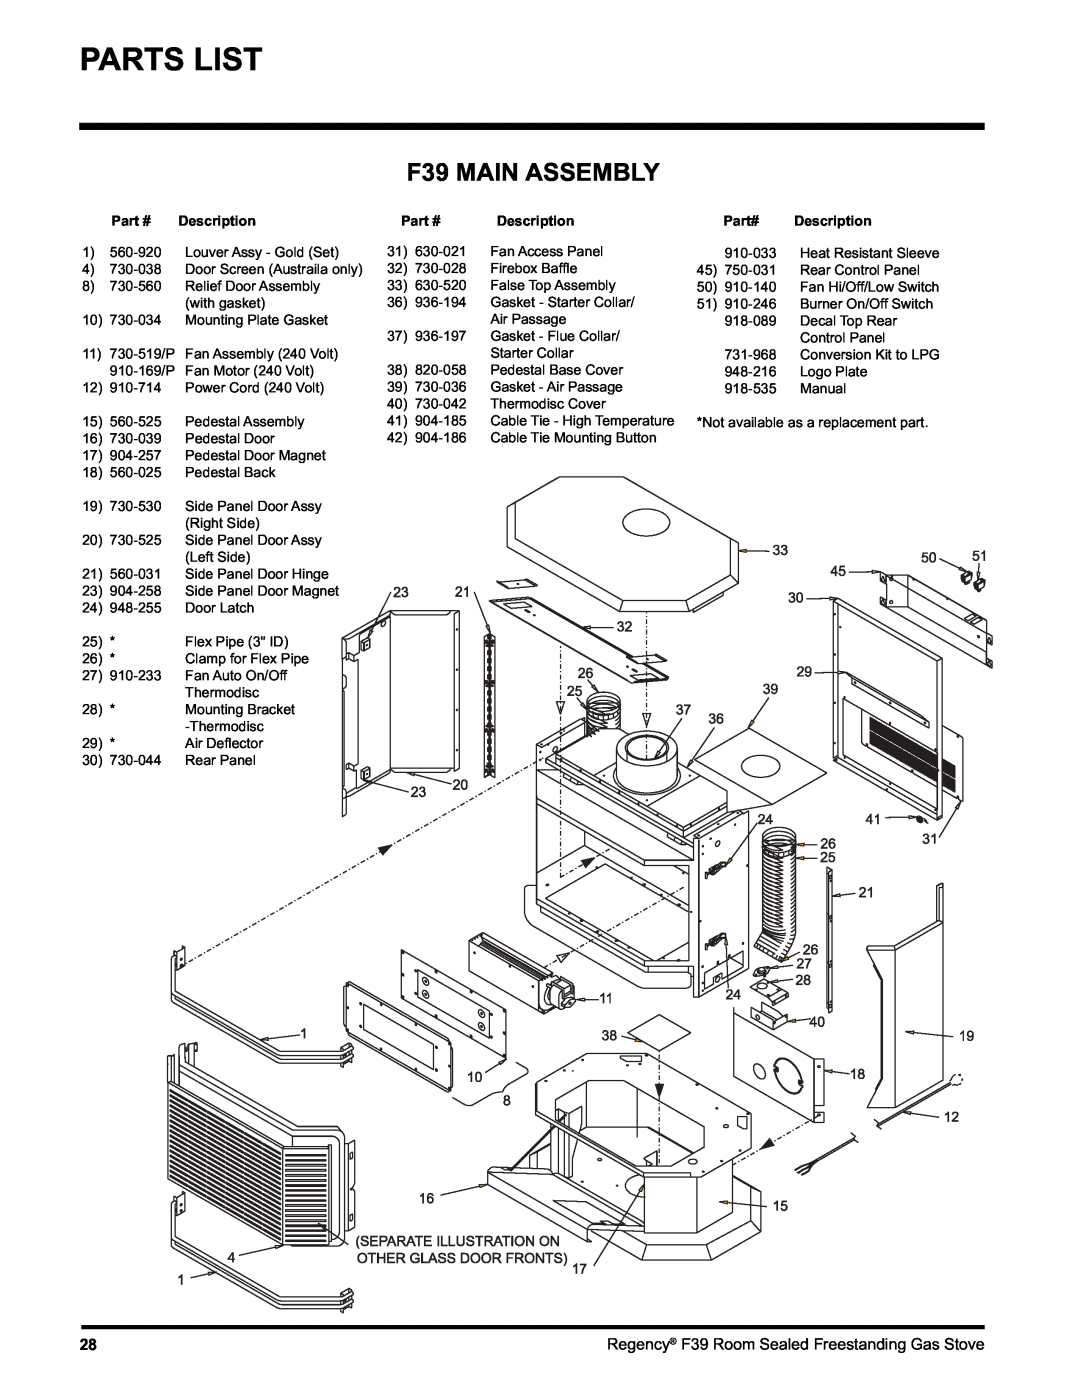 Regency F39-NG, F39-LPG installation manual Parts List, F39 MAIN ASSEMBLY, Part# Description 